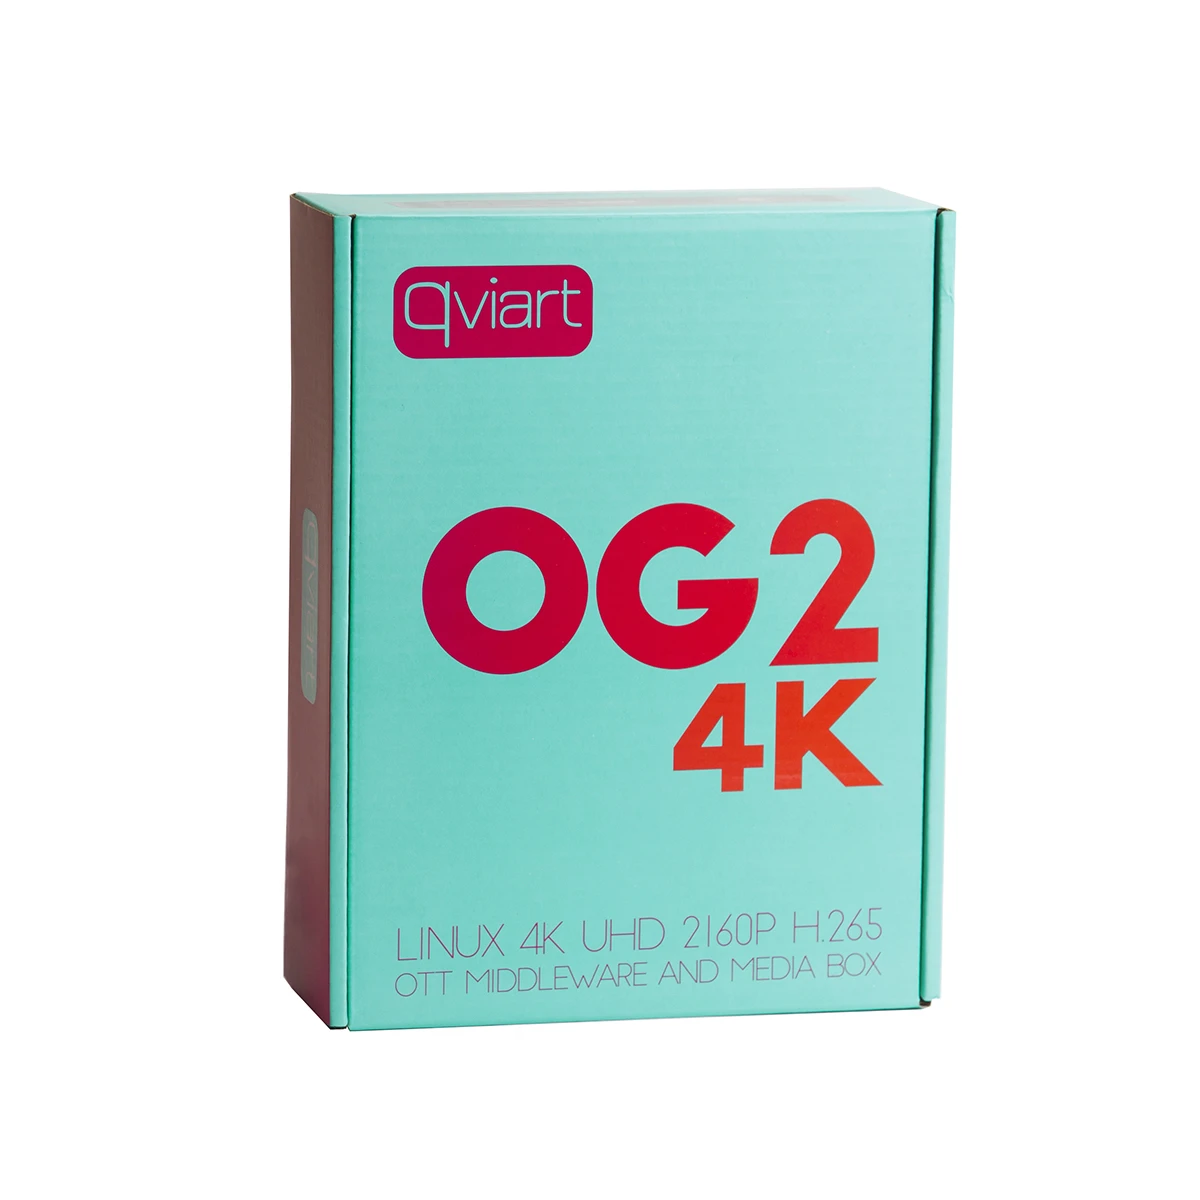 Qviart OG2 4K-Linux-IPTV-Decoder